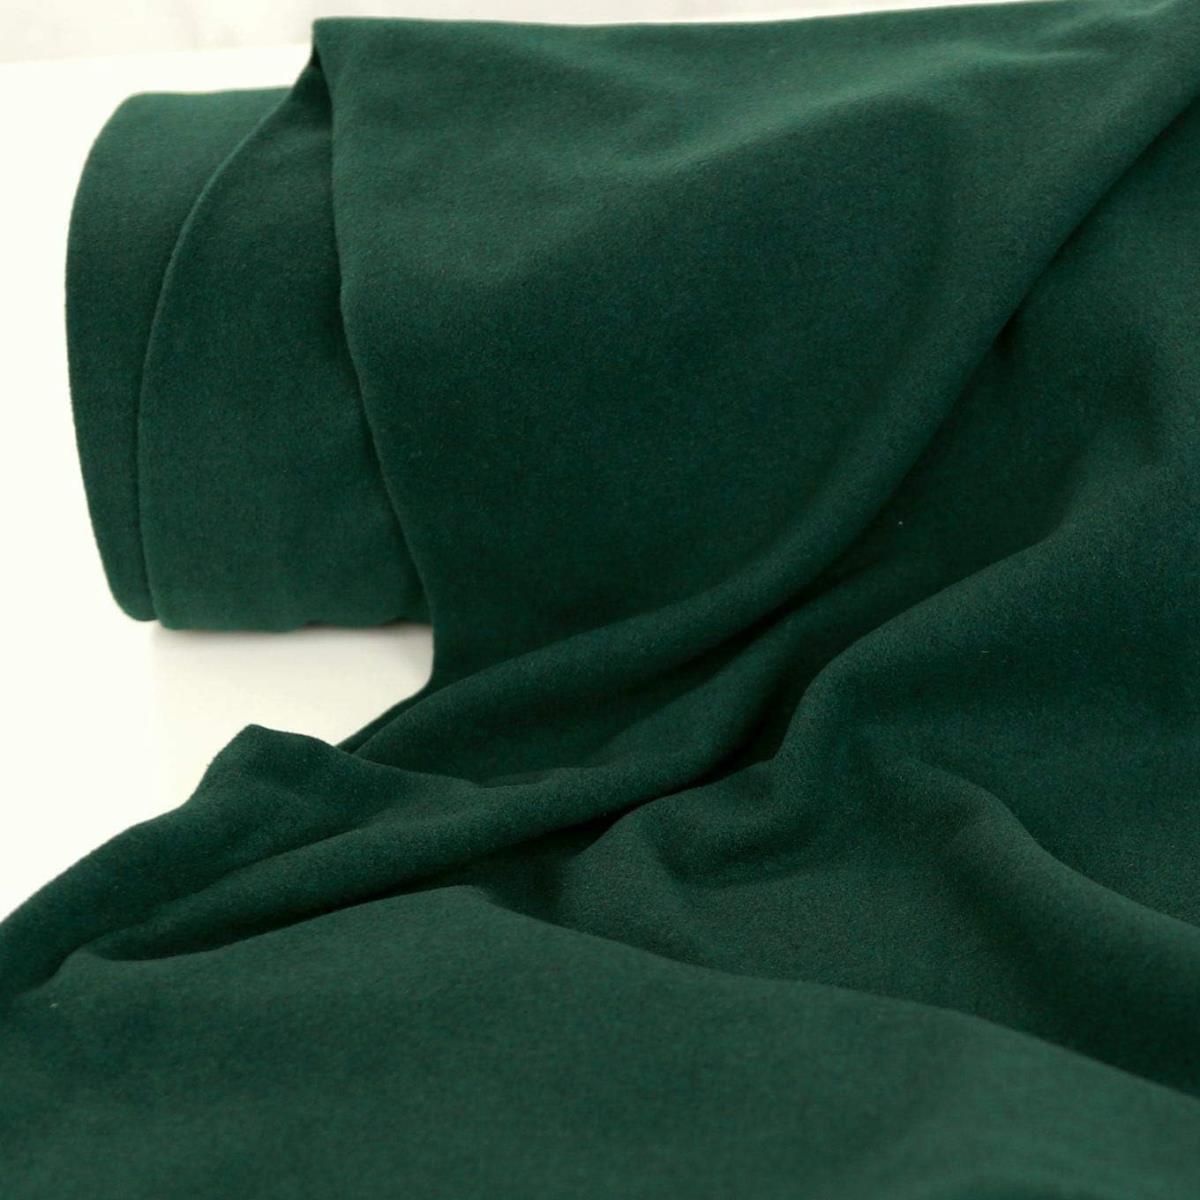 dicker warmer Winter Wollstoff für Mantel Jacke Decke - dunkel grün Wolltuch Meterware